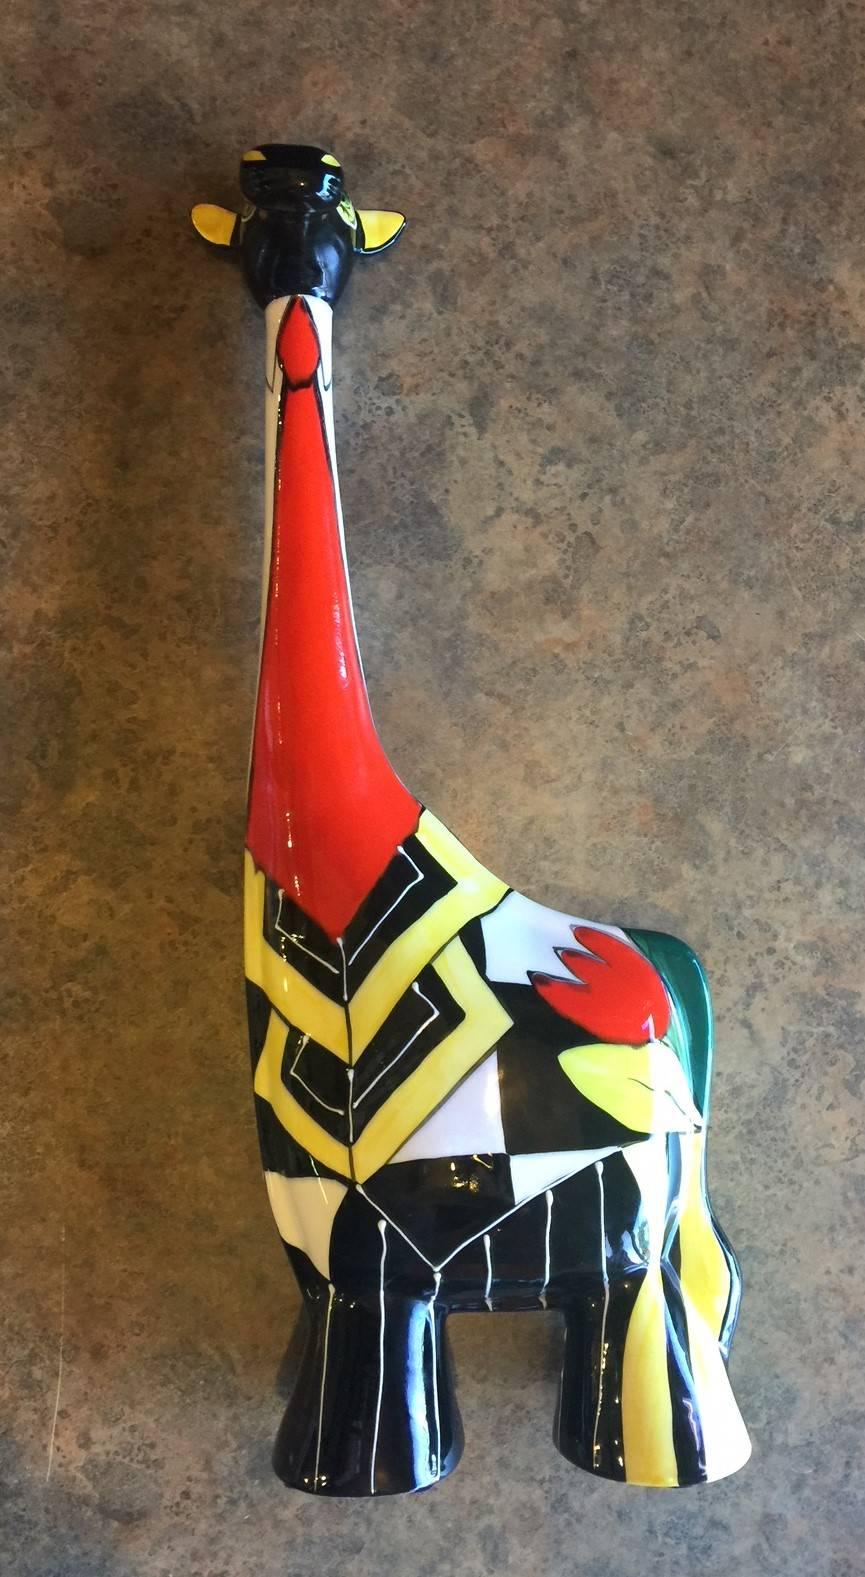 Russian Colorful Ceramic Giraffe by Turov Art of Russia For Sale